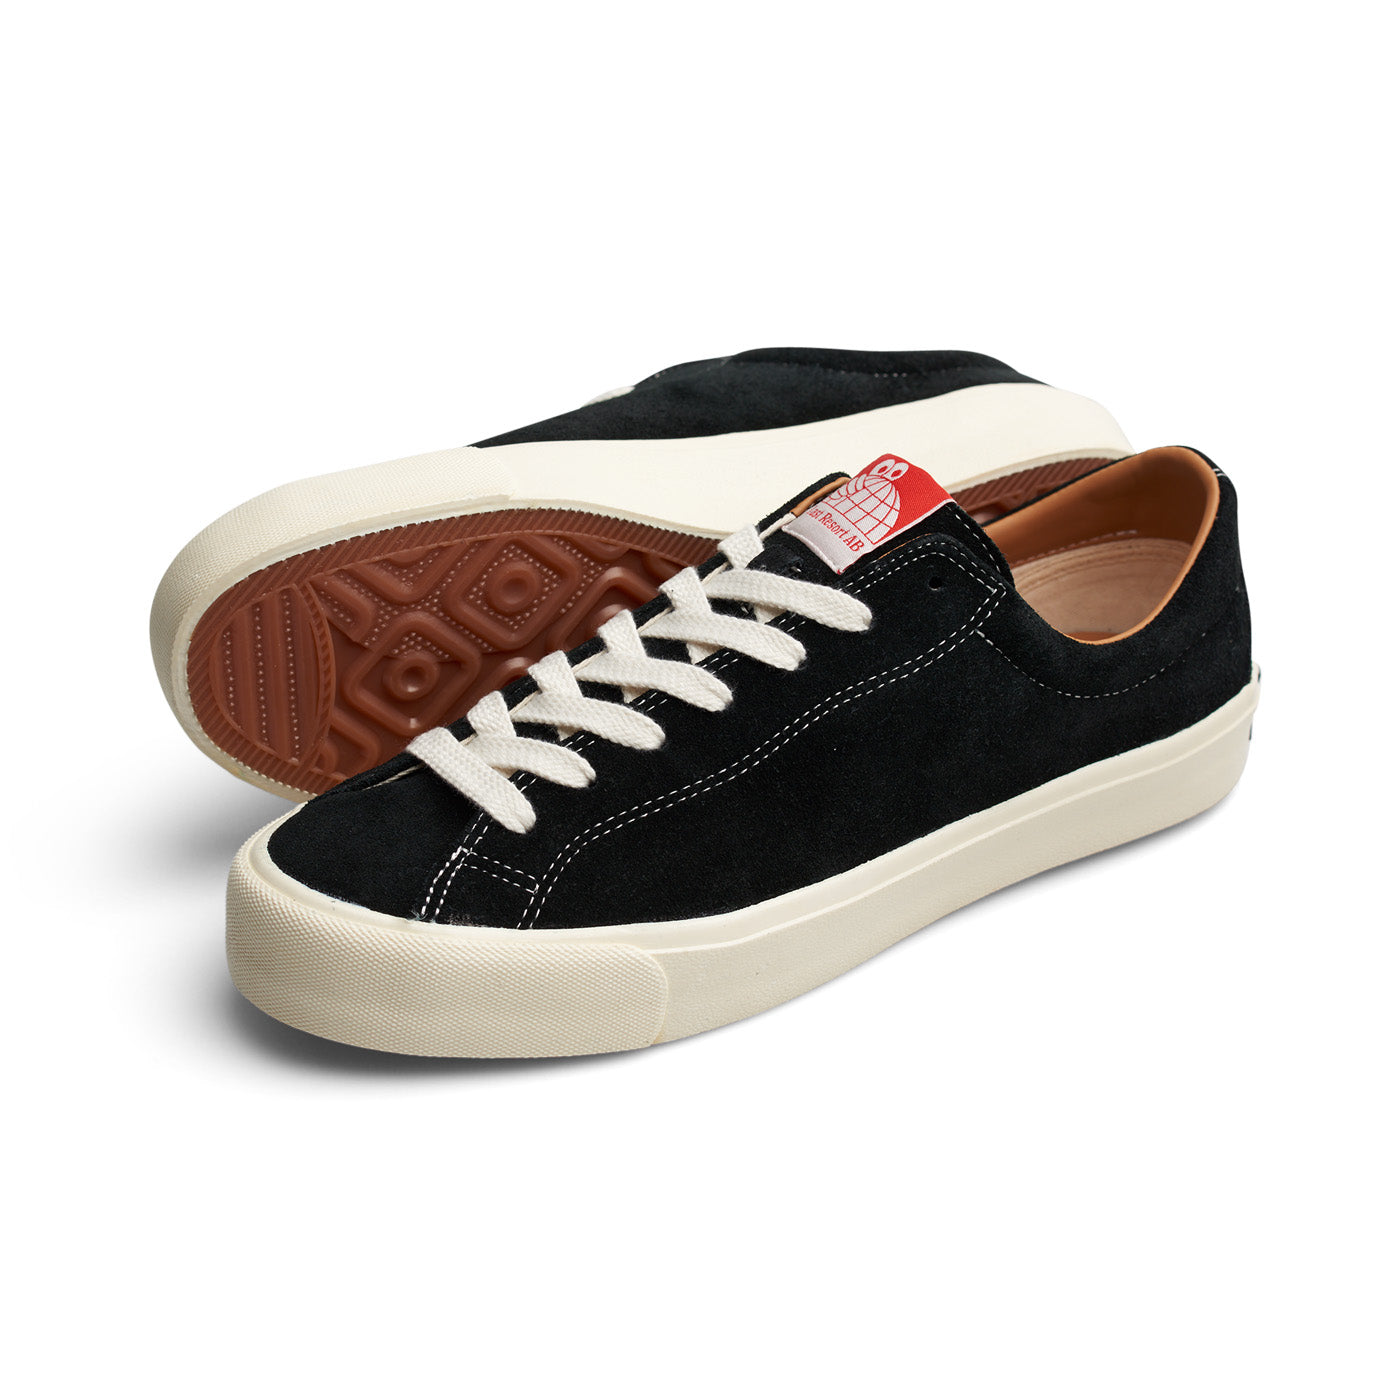 VM003 Suede Shoe, Black